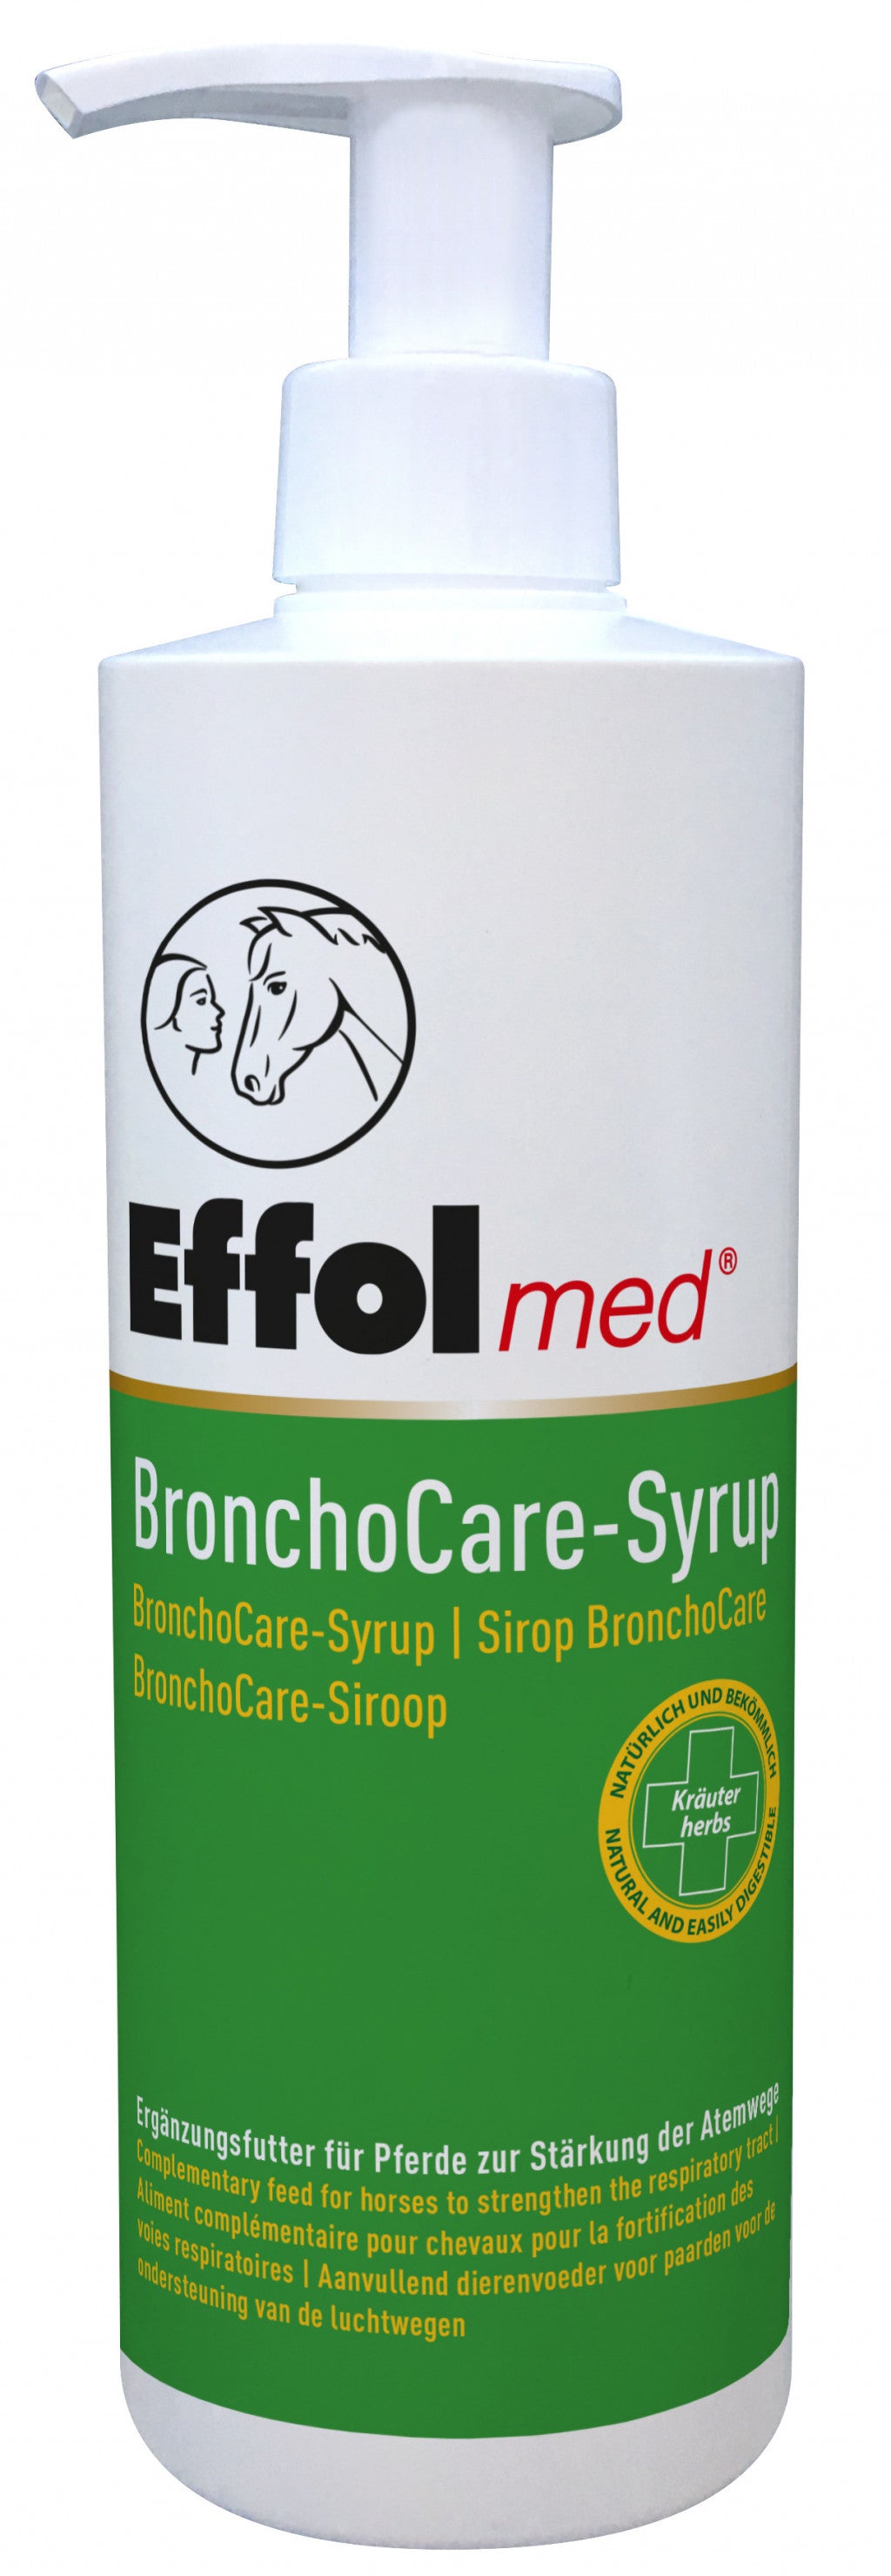 Effol med BronchoCare-Syrup